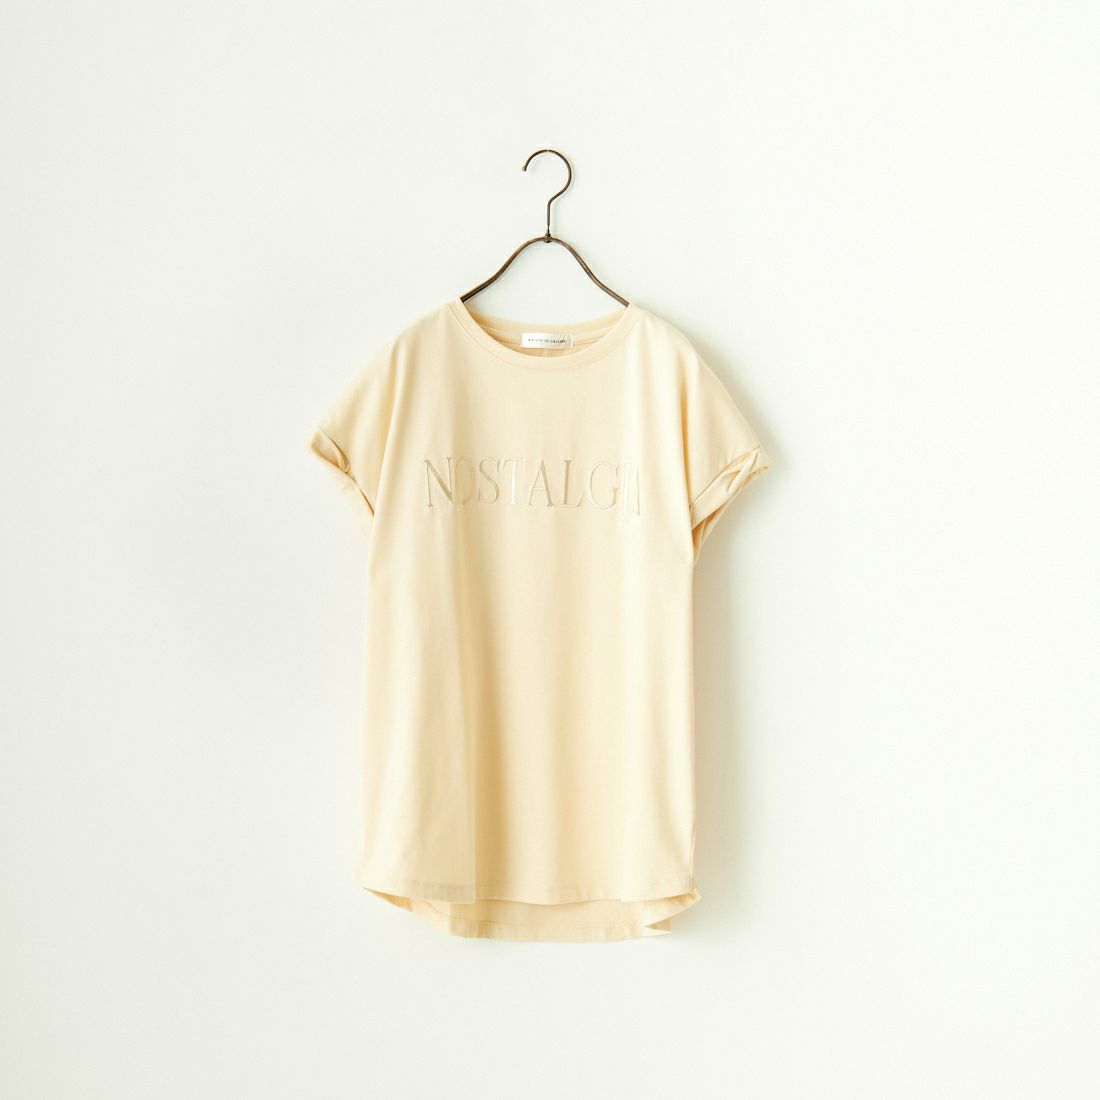 Maison de L'allure [メゾン ドゥ ラリュール] 捻りフレンチスリーブ ロゴ刺繍Tシャツ [24112016] 31 YELLOW